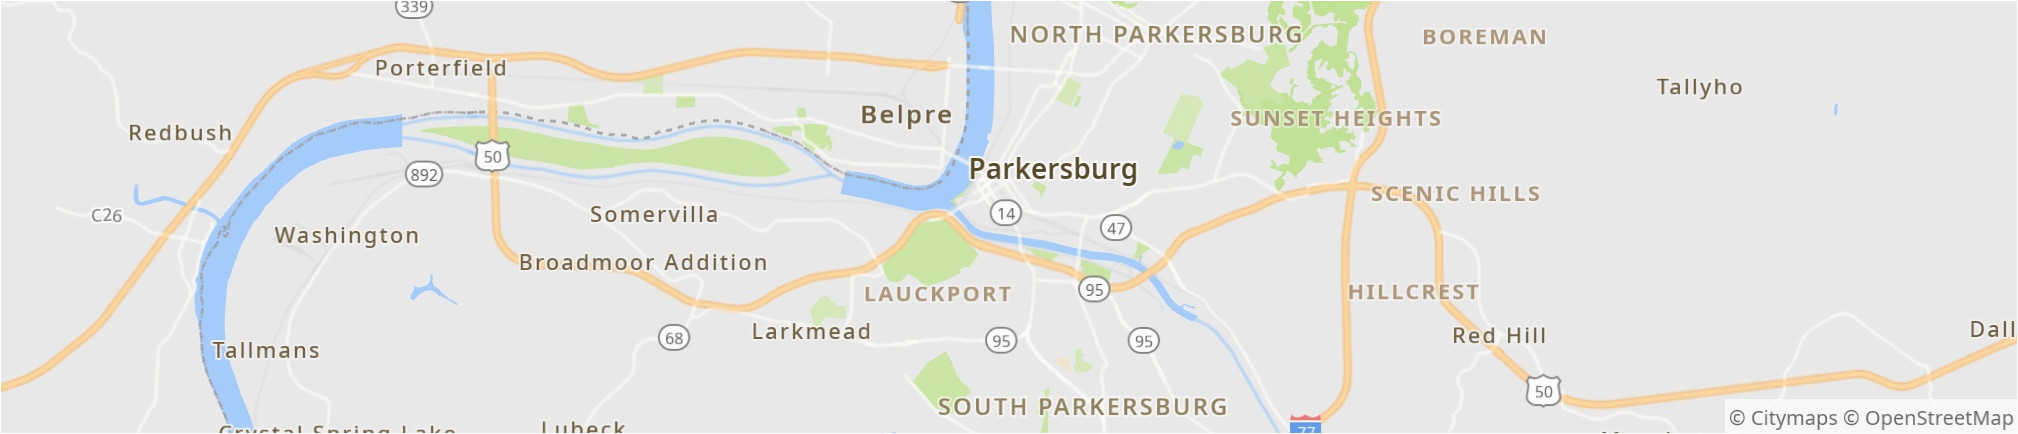 parkersburg 2019 best of parkersburg wv tourism tripadvisor